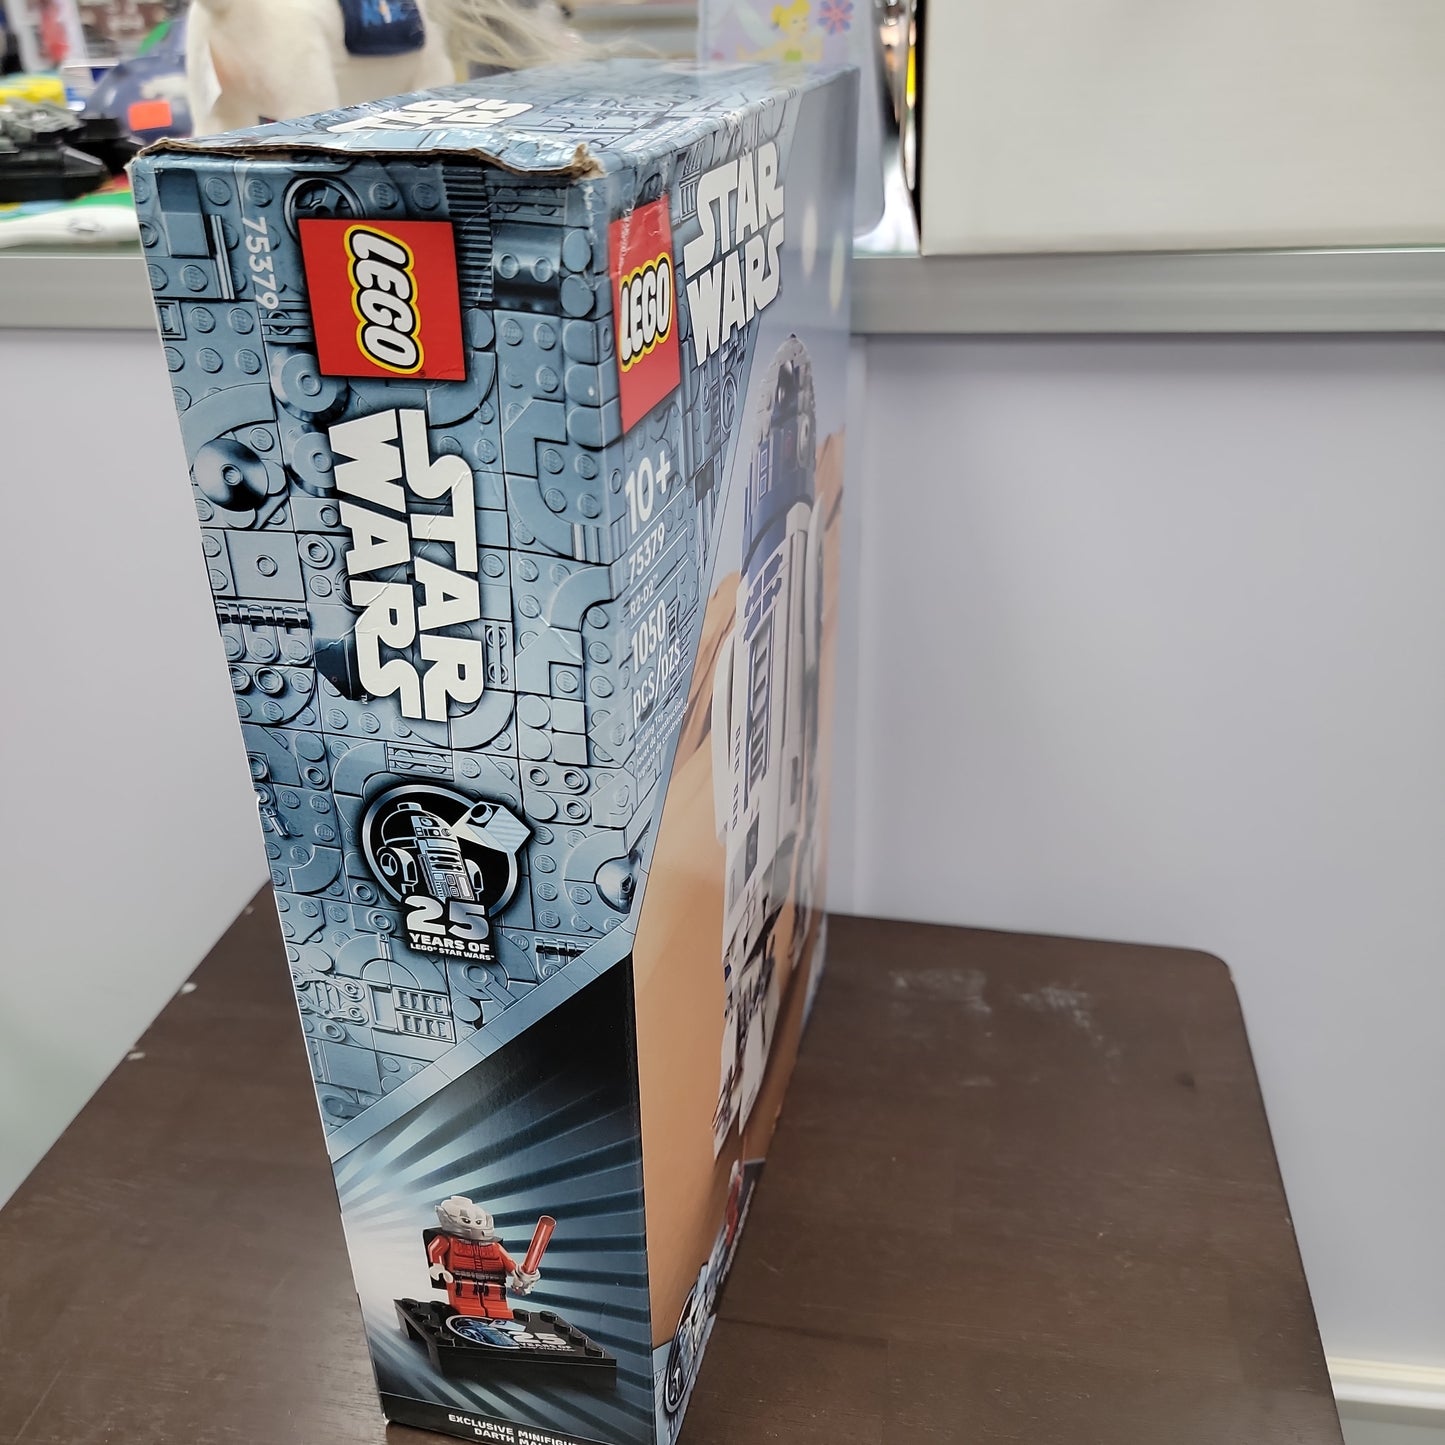 Star Wars R2-D2 Lego Set